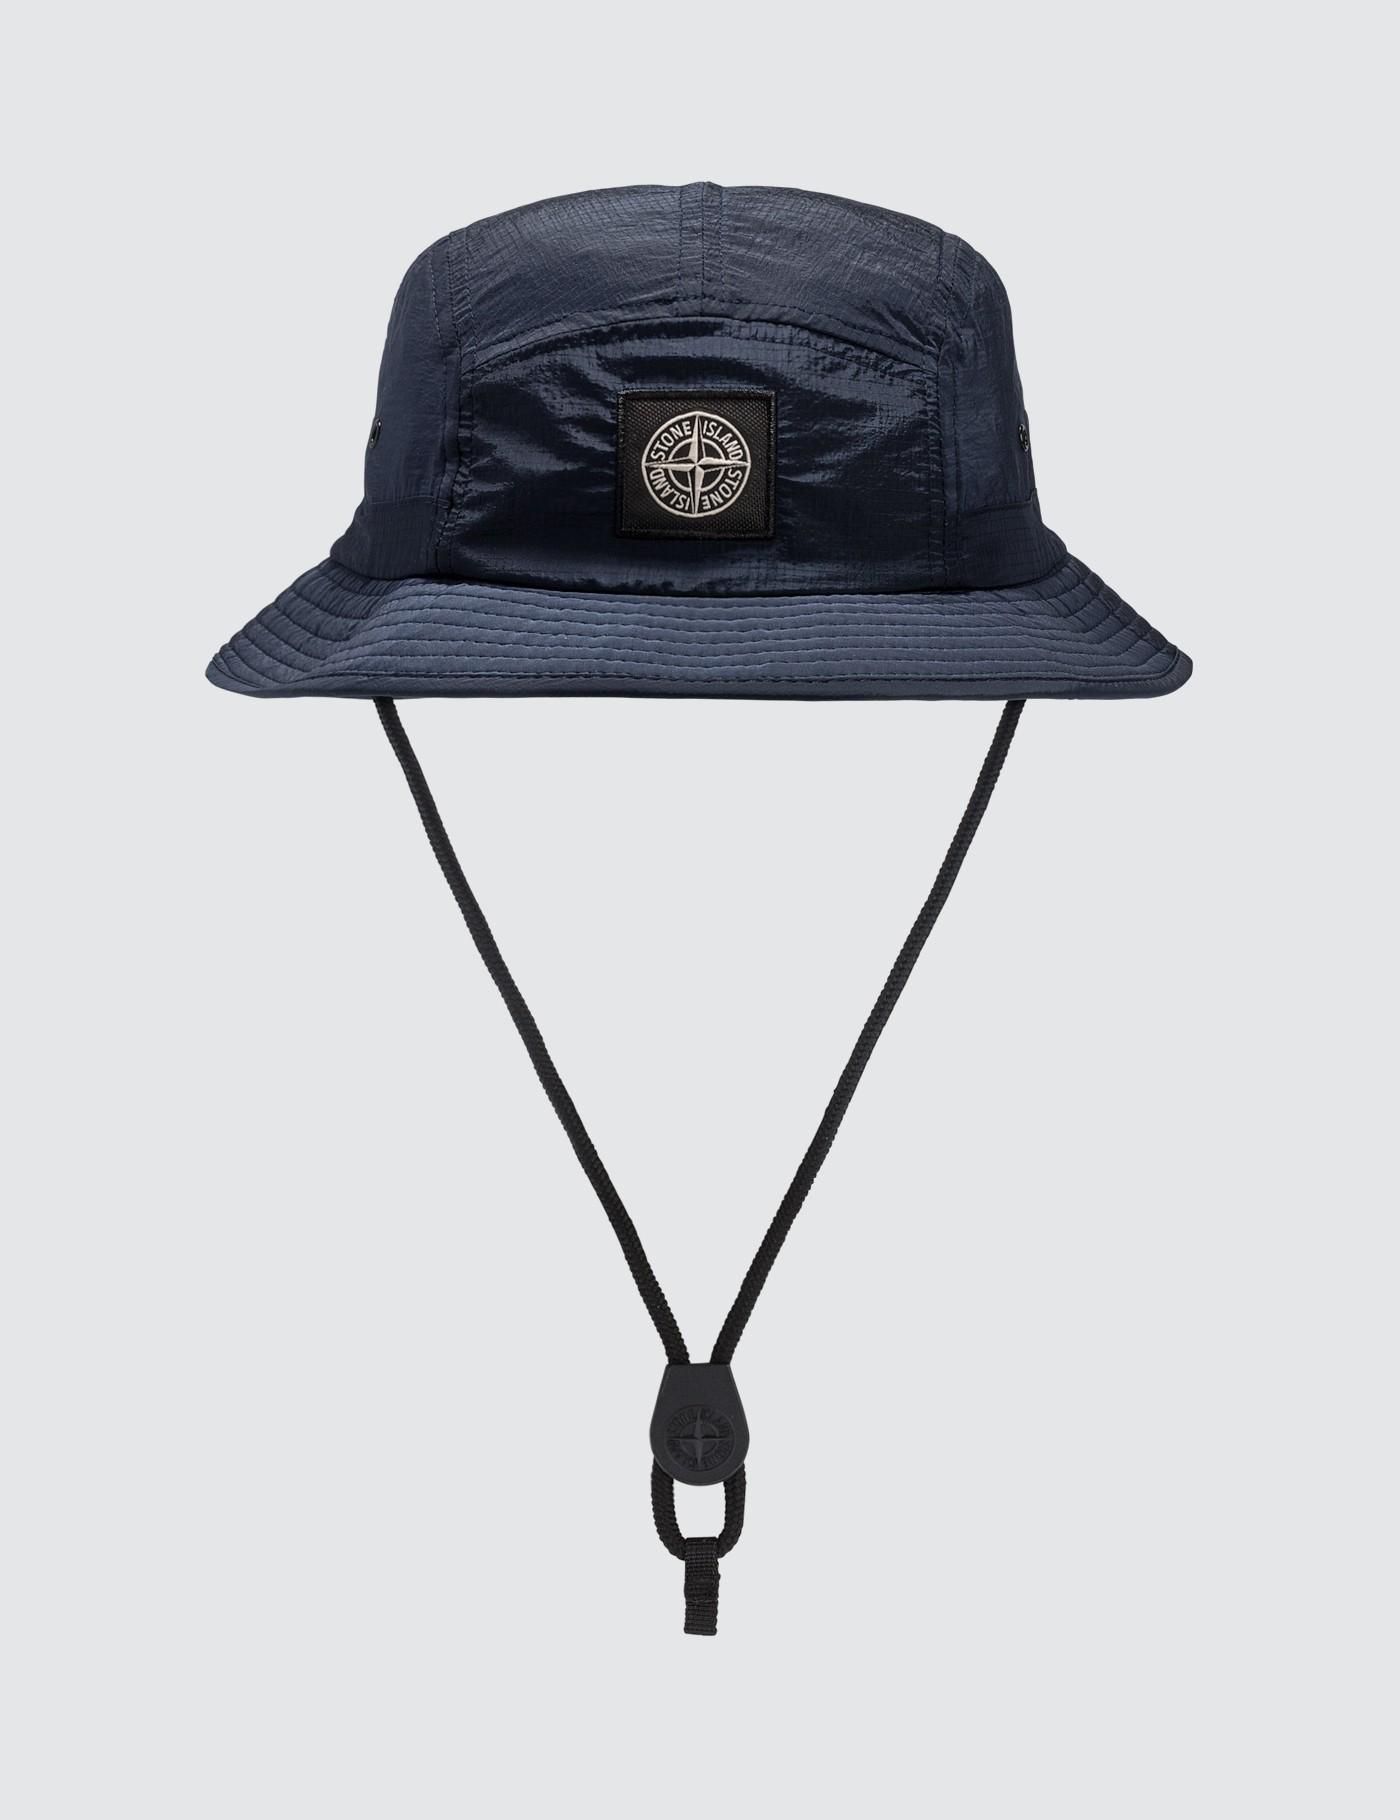 Stone Island Bucket Hat in Blue for Men - Lyst